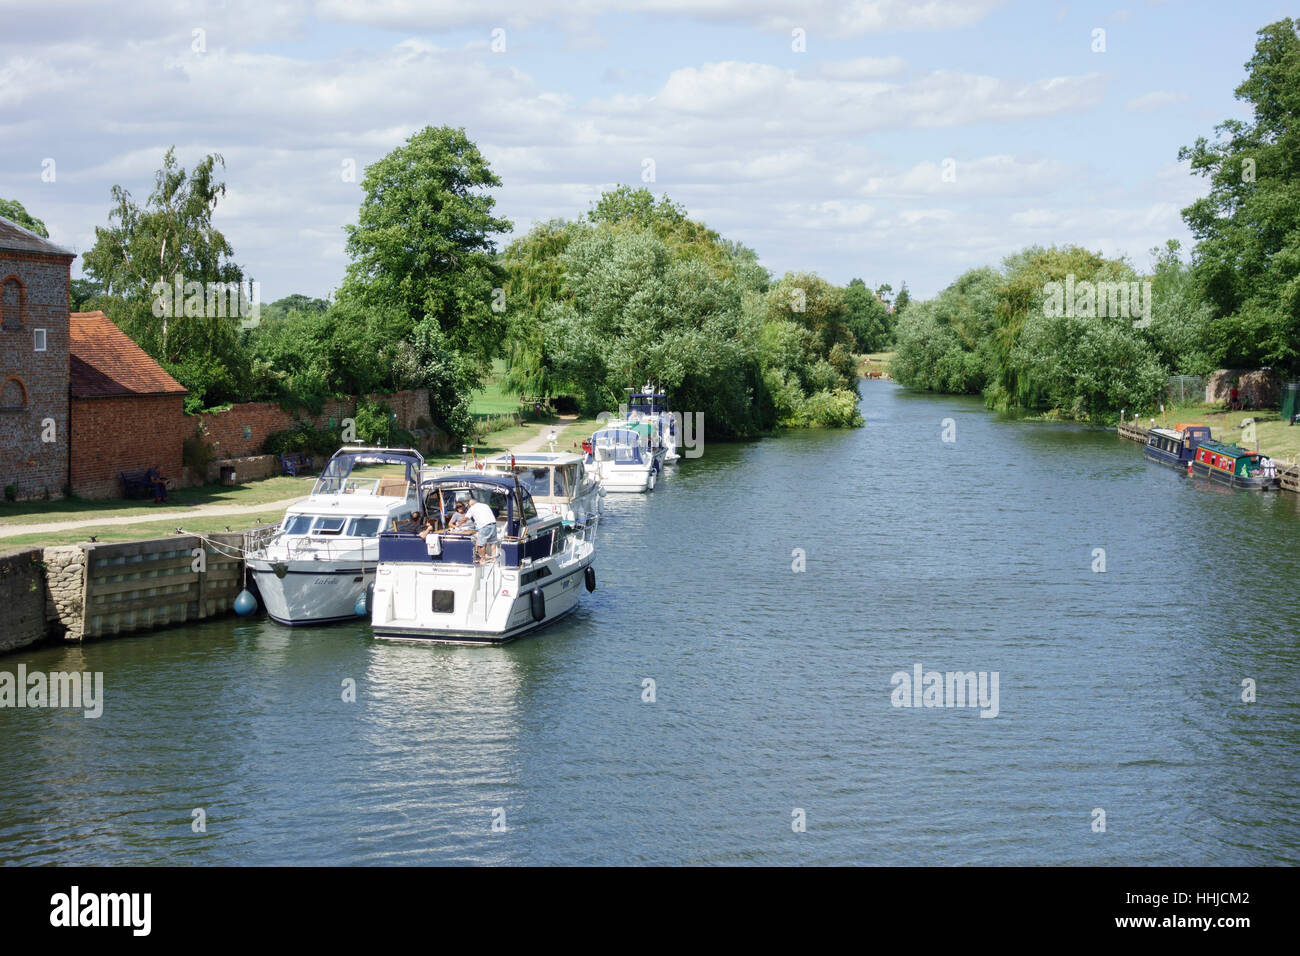 La location des bateaux à moteur, Tamise, Wallingford, Oxfordshire, England, UK Banque D'Images